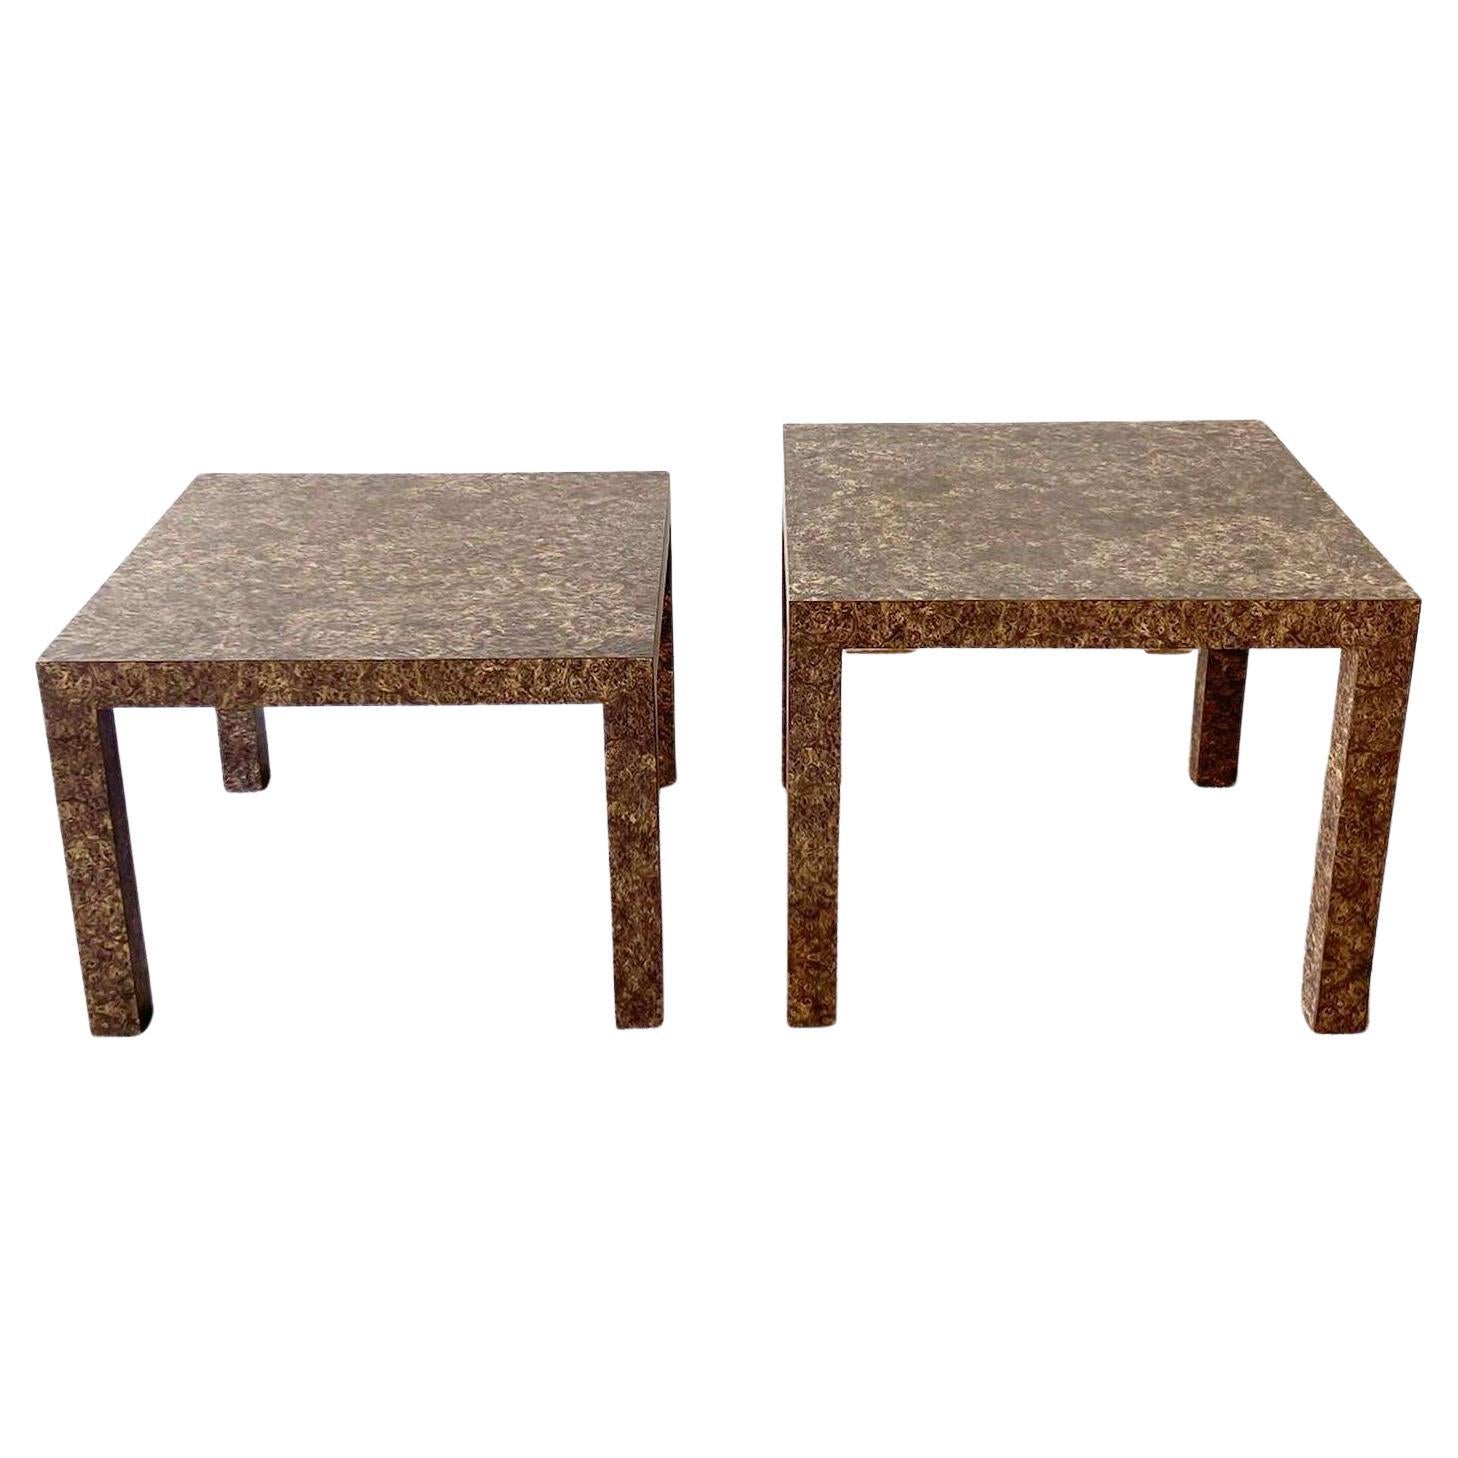 Tables d'appoint Parsons ascendantes postmodernes en stratifié bois de bourgogne - la paire